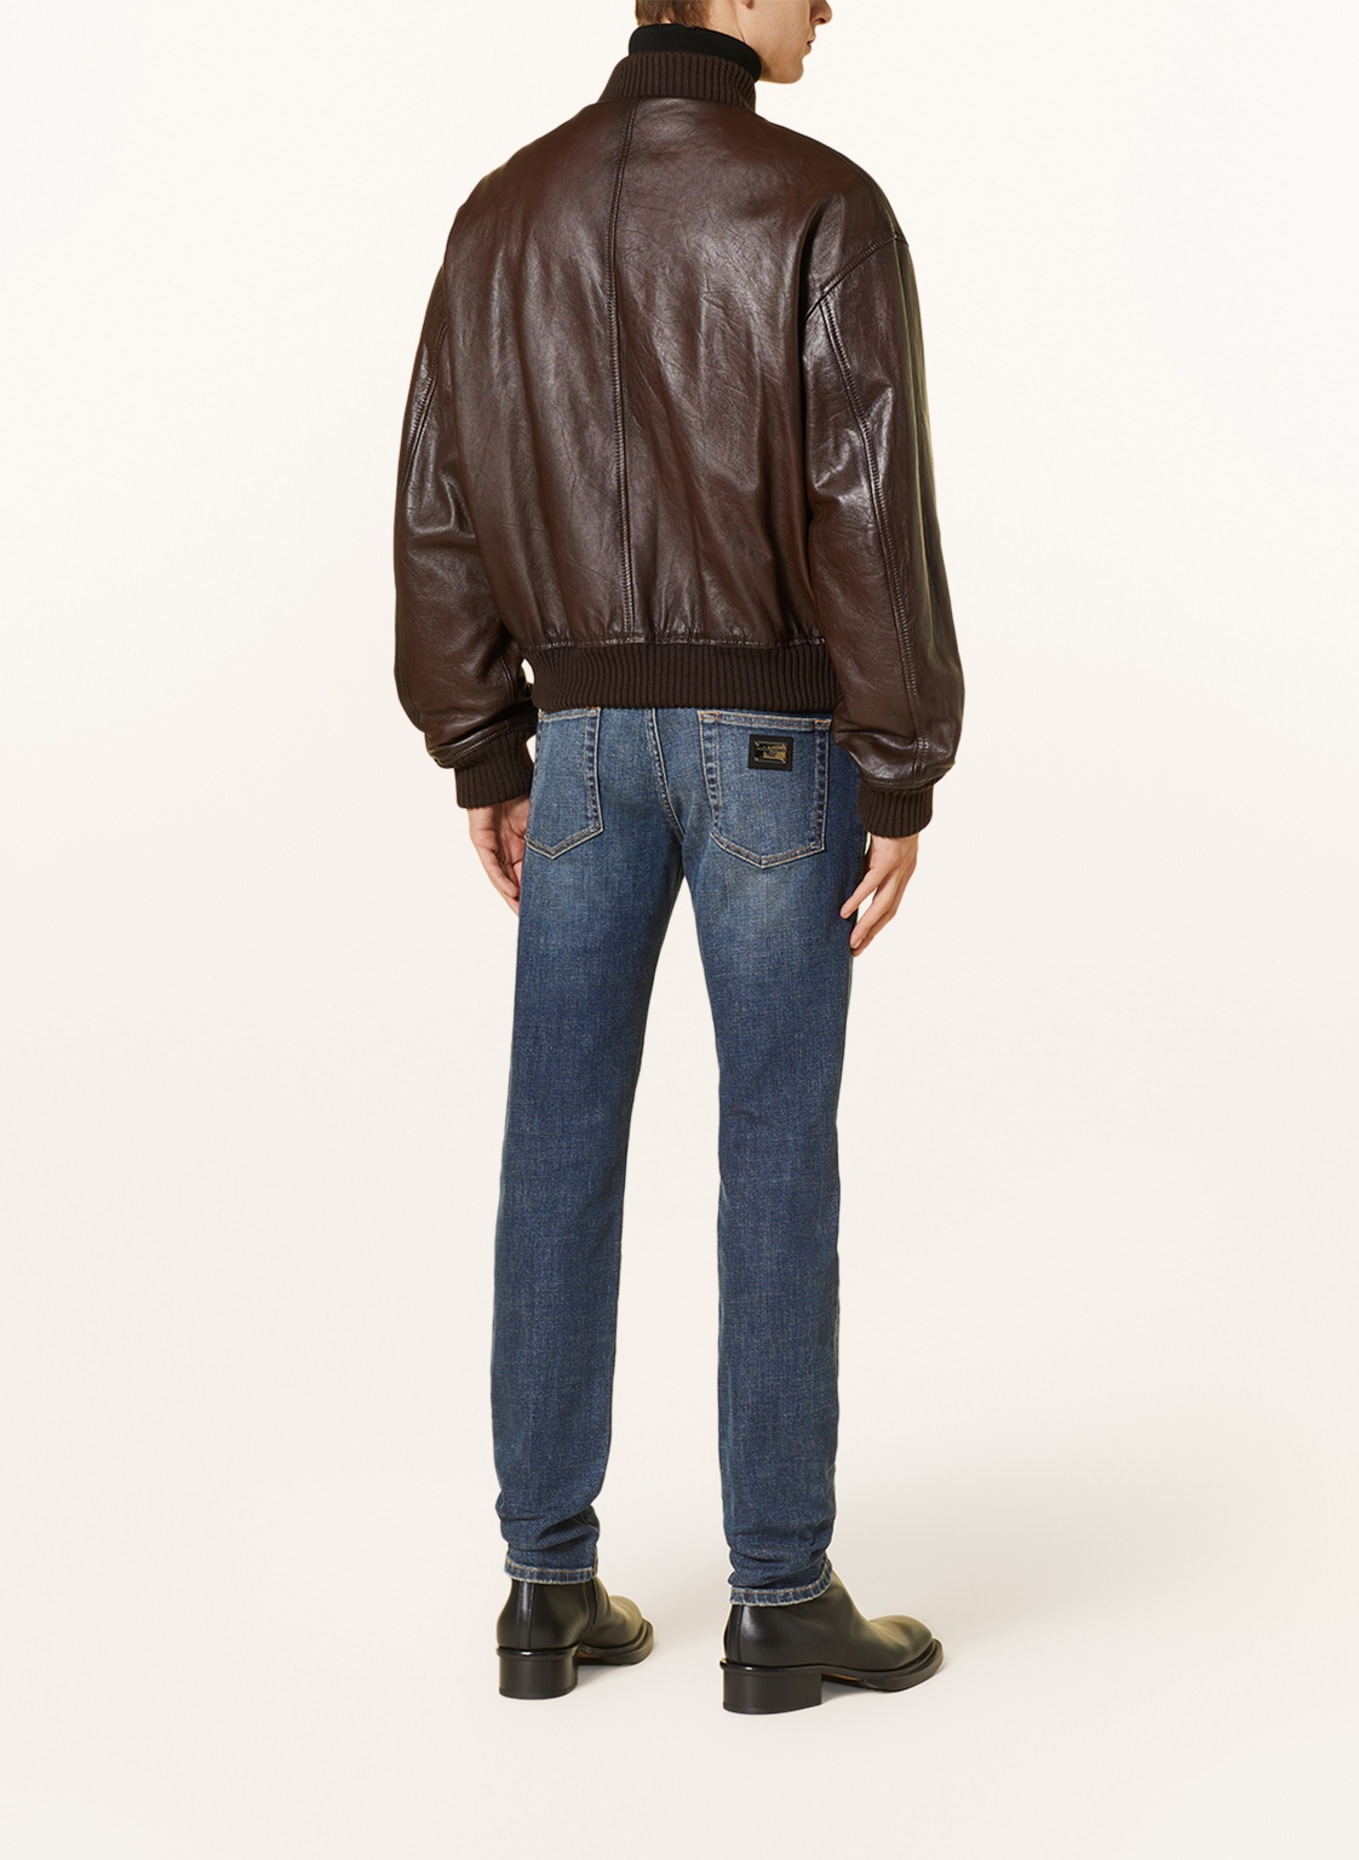 DOLCE & GABBANA Leather bomber jacket, Color: DARK BROWN (Image 3)